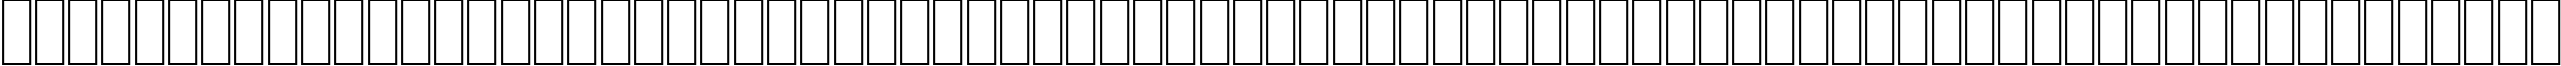 Пример написания английского алфавита шрифтом AGA Nada Regular